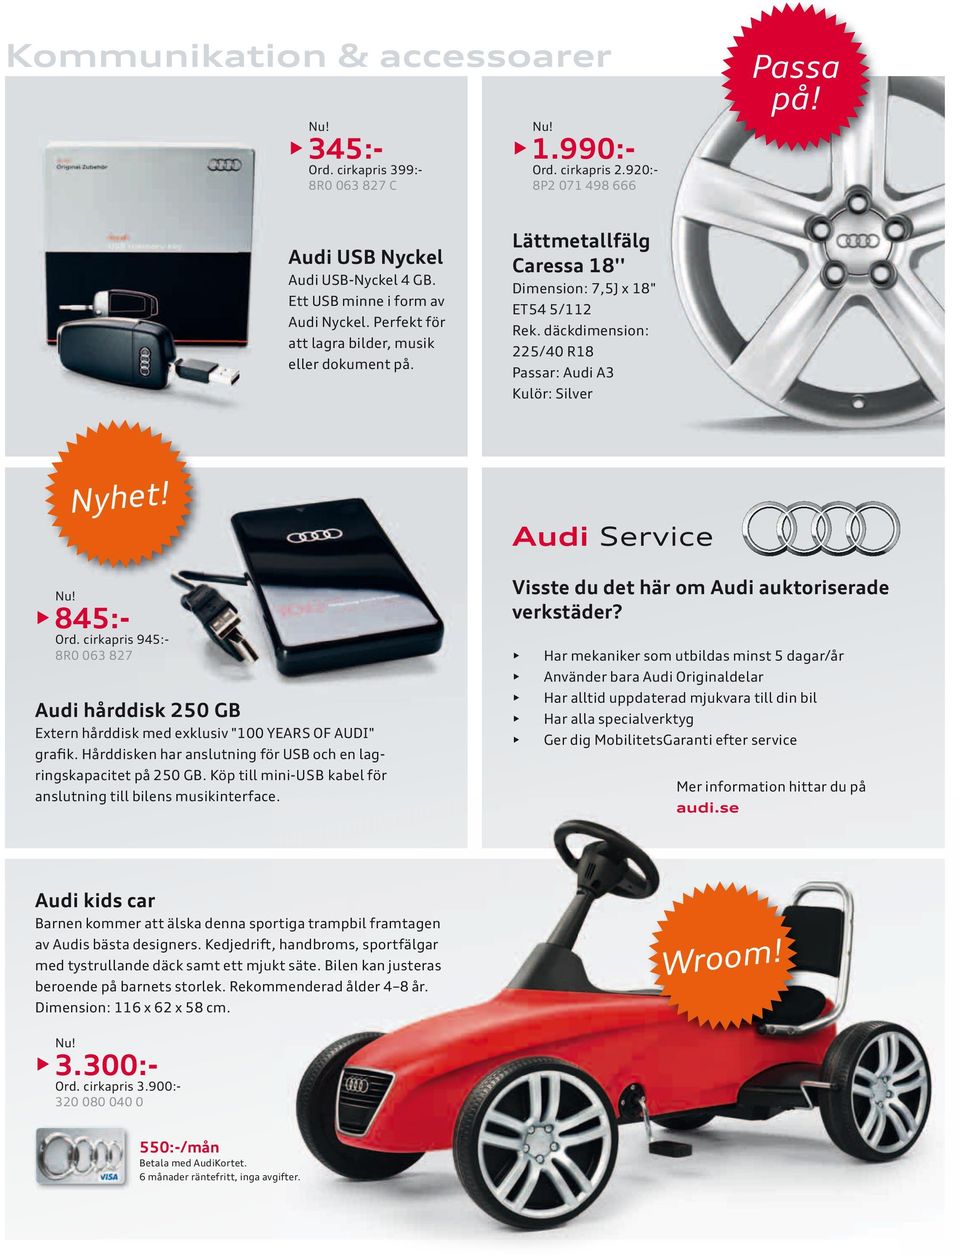 Audi Service 845:- Ord. cirkapris 945:- 8R0 063 827 Audi hårddisk 250 GB Extern hårddisk med exklusiv "100 YEARS OF AUDI" grafik. Hårddisken har anslutning för USB och en lagringskapacitet på 250 GB.